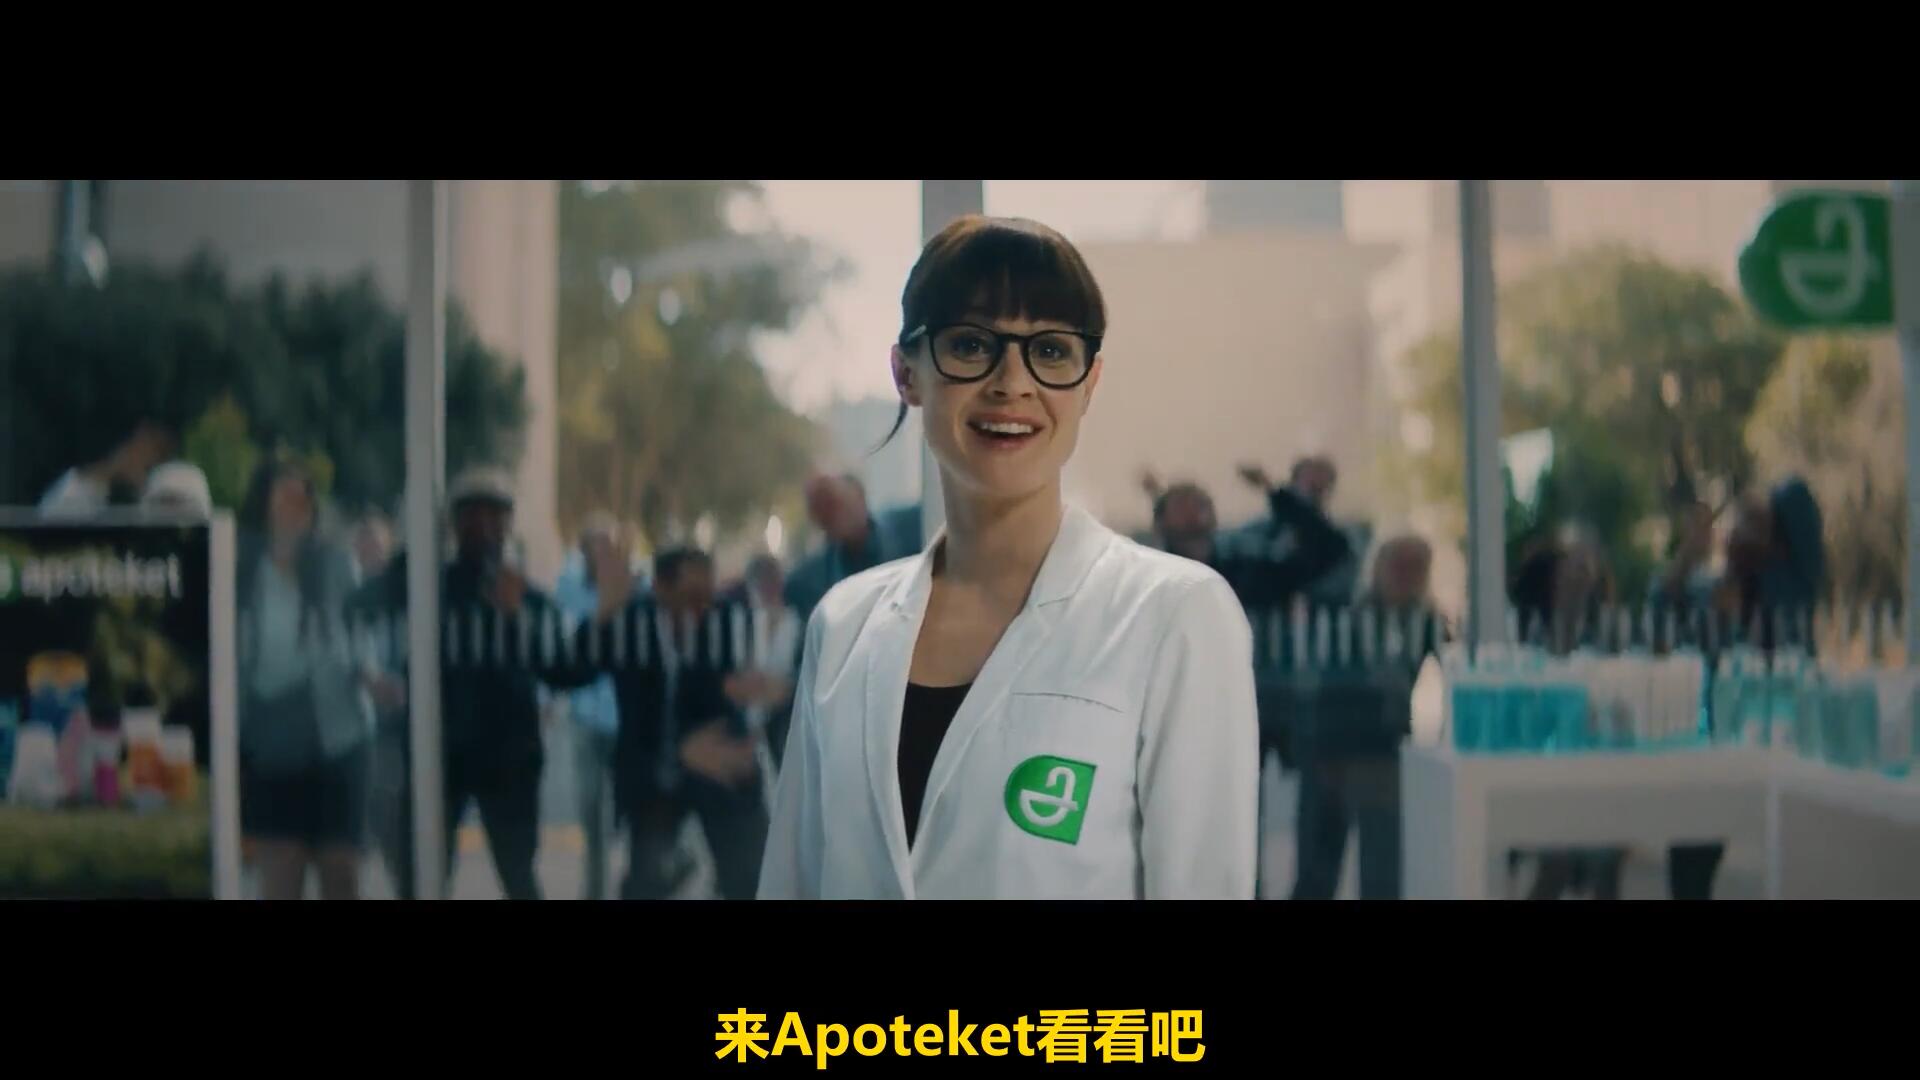 瑞典药店Apotek 创意广告